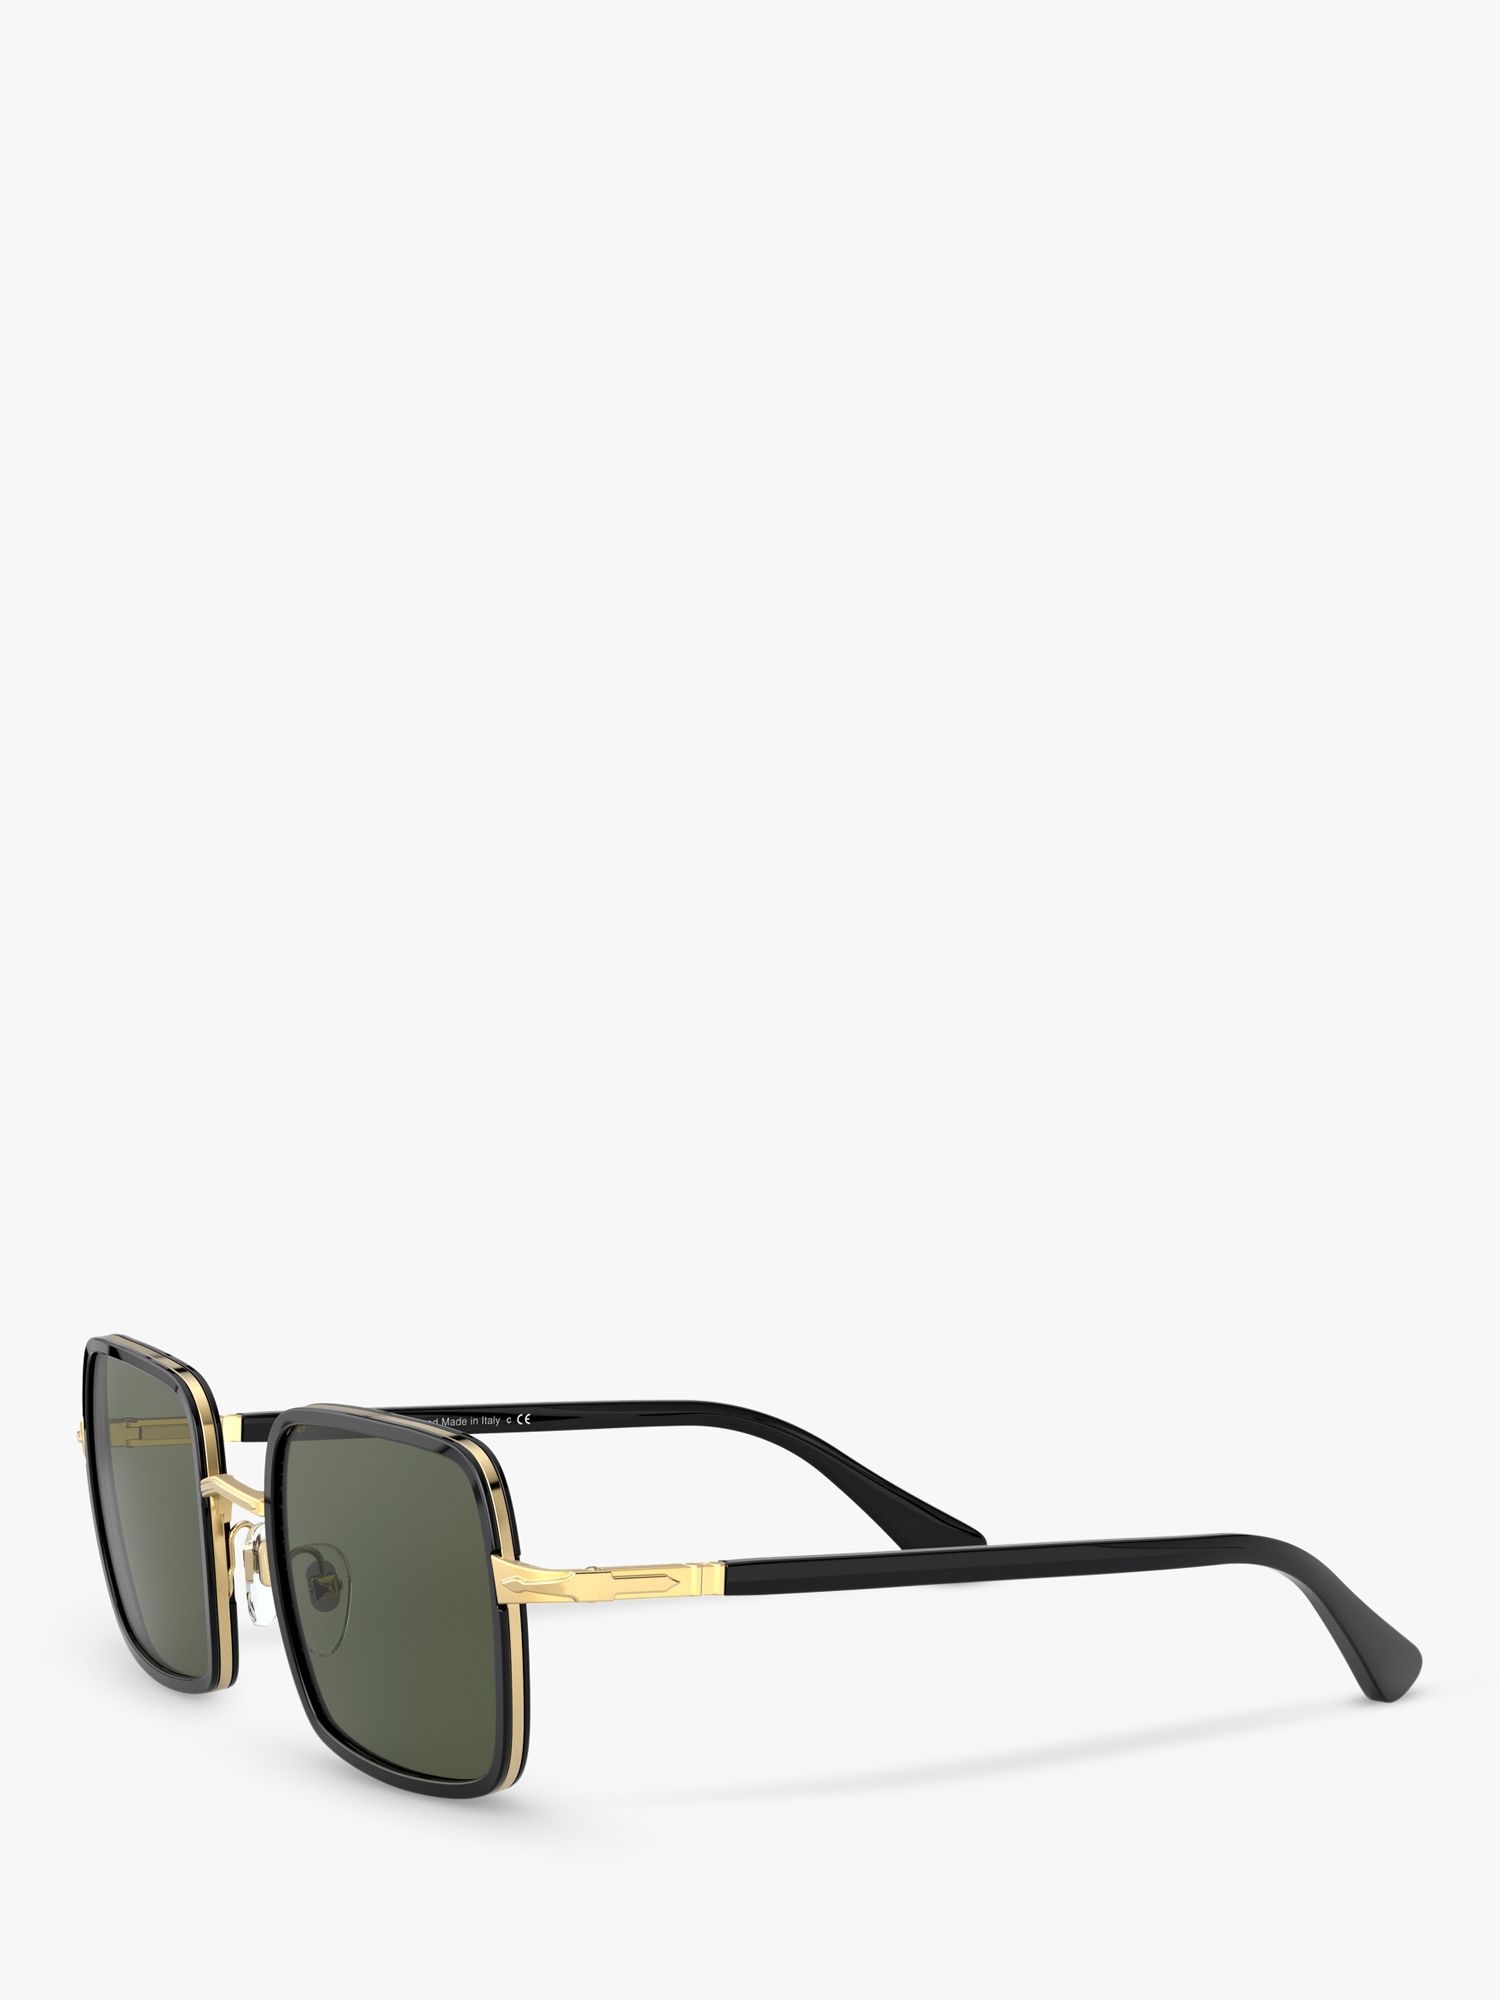 Persol PO2475S Unisex Square Sunglasses, Gold/Black